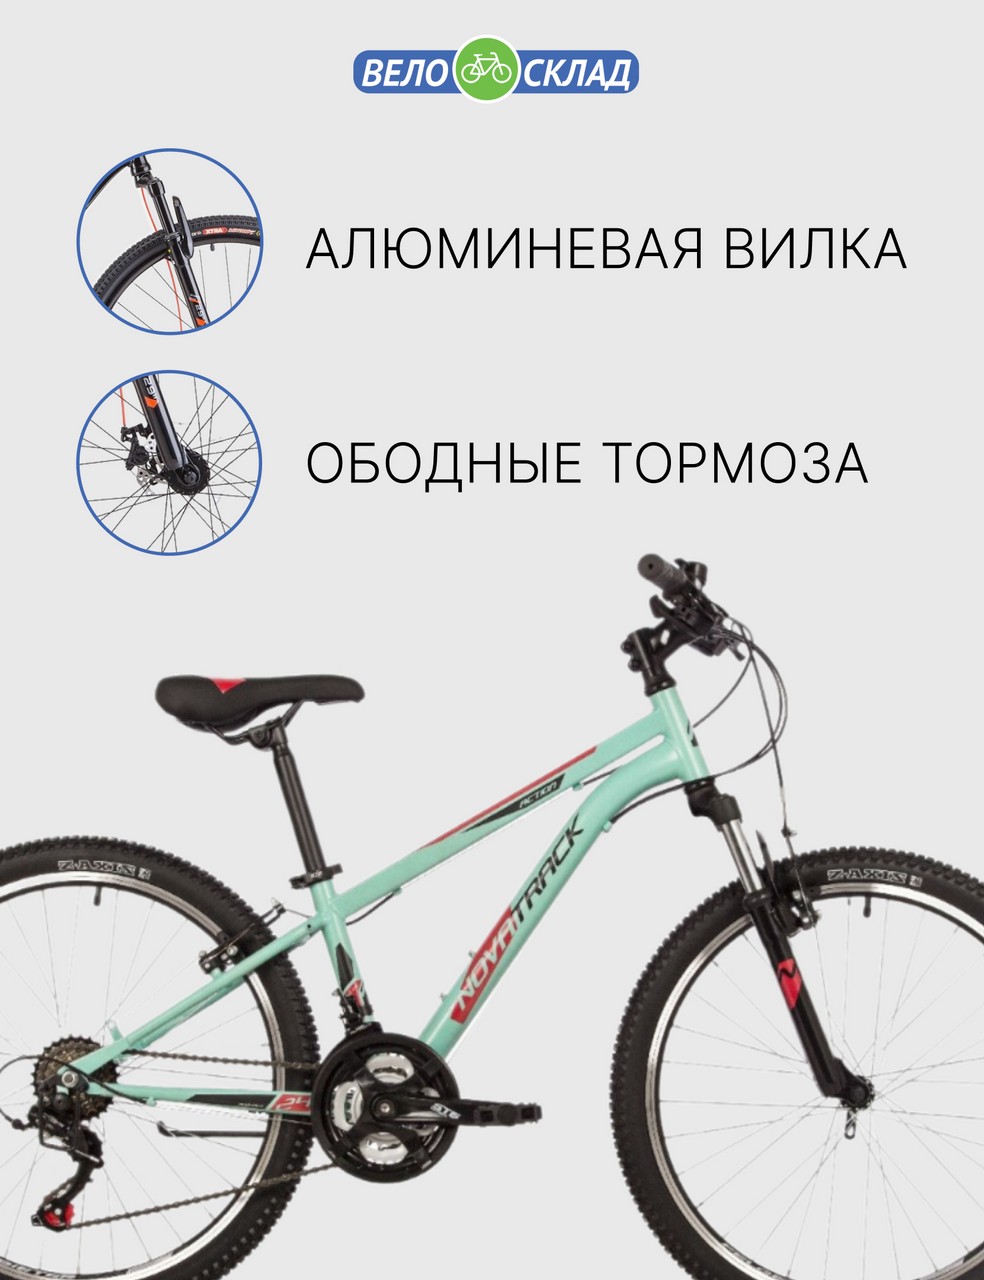 Подростковый велосипед Novatrack Action 24, год 2023, цвет Зеленый-Голубой, ростовка 12